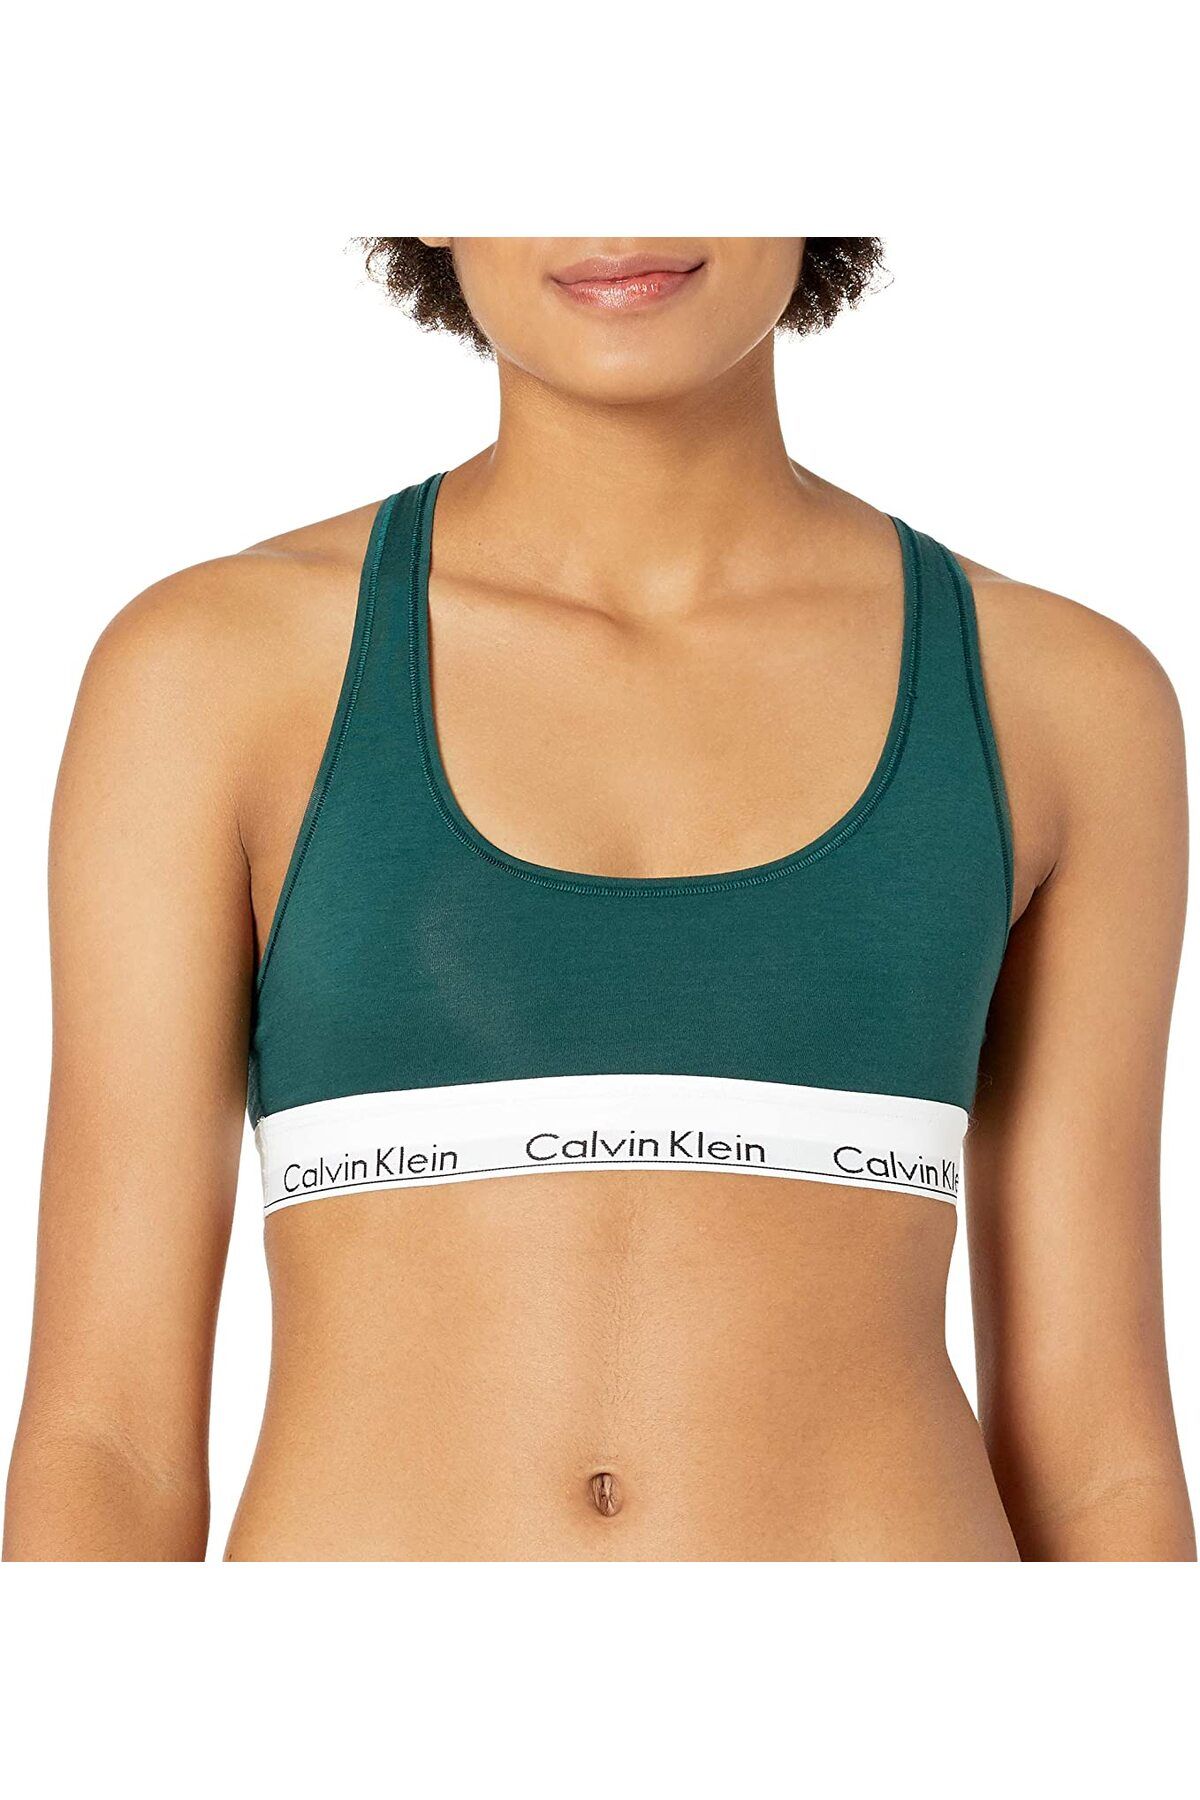 Calvin Klein Calvın Kleın Kadın Spor Atleti F3785-989